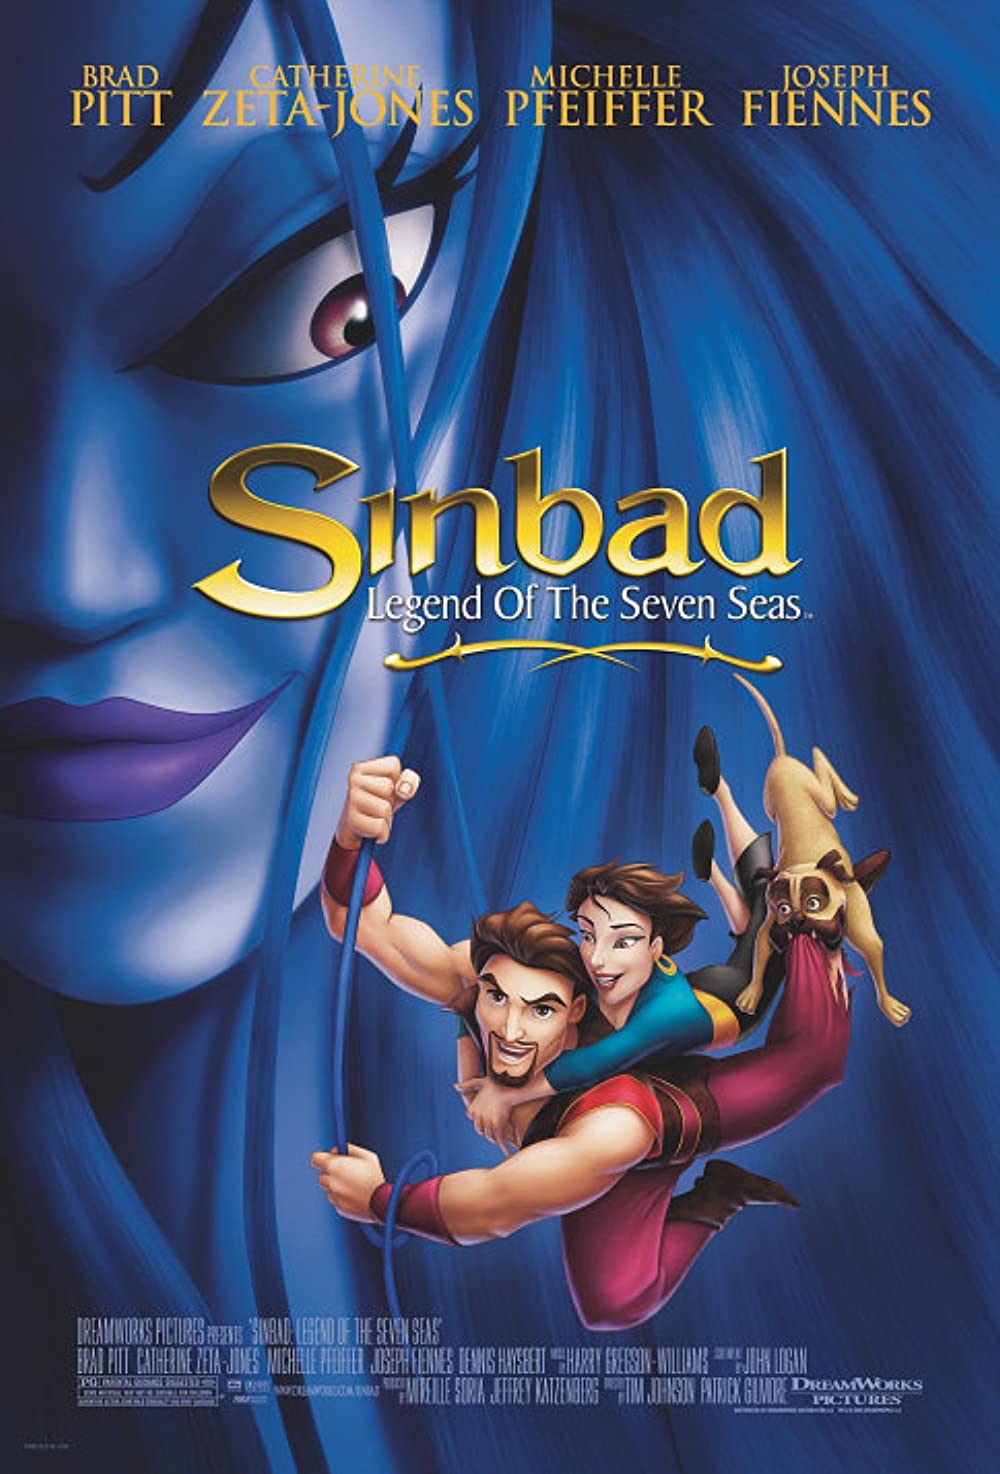 ดูหนังออนไลน์ Sinbad Legend Of The Seven Seas (2003) ซินแบด พิชิตตำนาน 7 คาบสมุทร หนังมาสเตอร์ หนังเต็มเรื่อง ดูหนังฟรีออนไลน์ ดูหนังออนไลน์ หนังออนไลน์ ดูหนังใหม่ หนังพากย์ไทย หนังซับไทย ดูฟรีHD